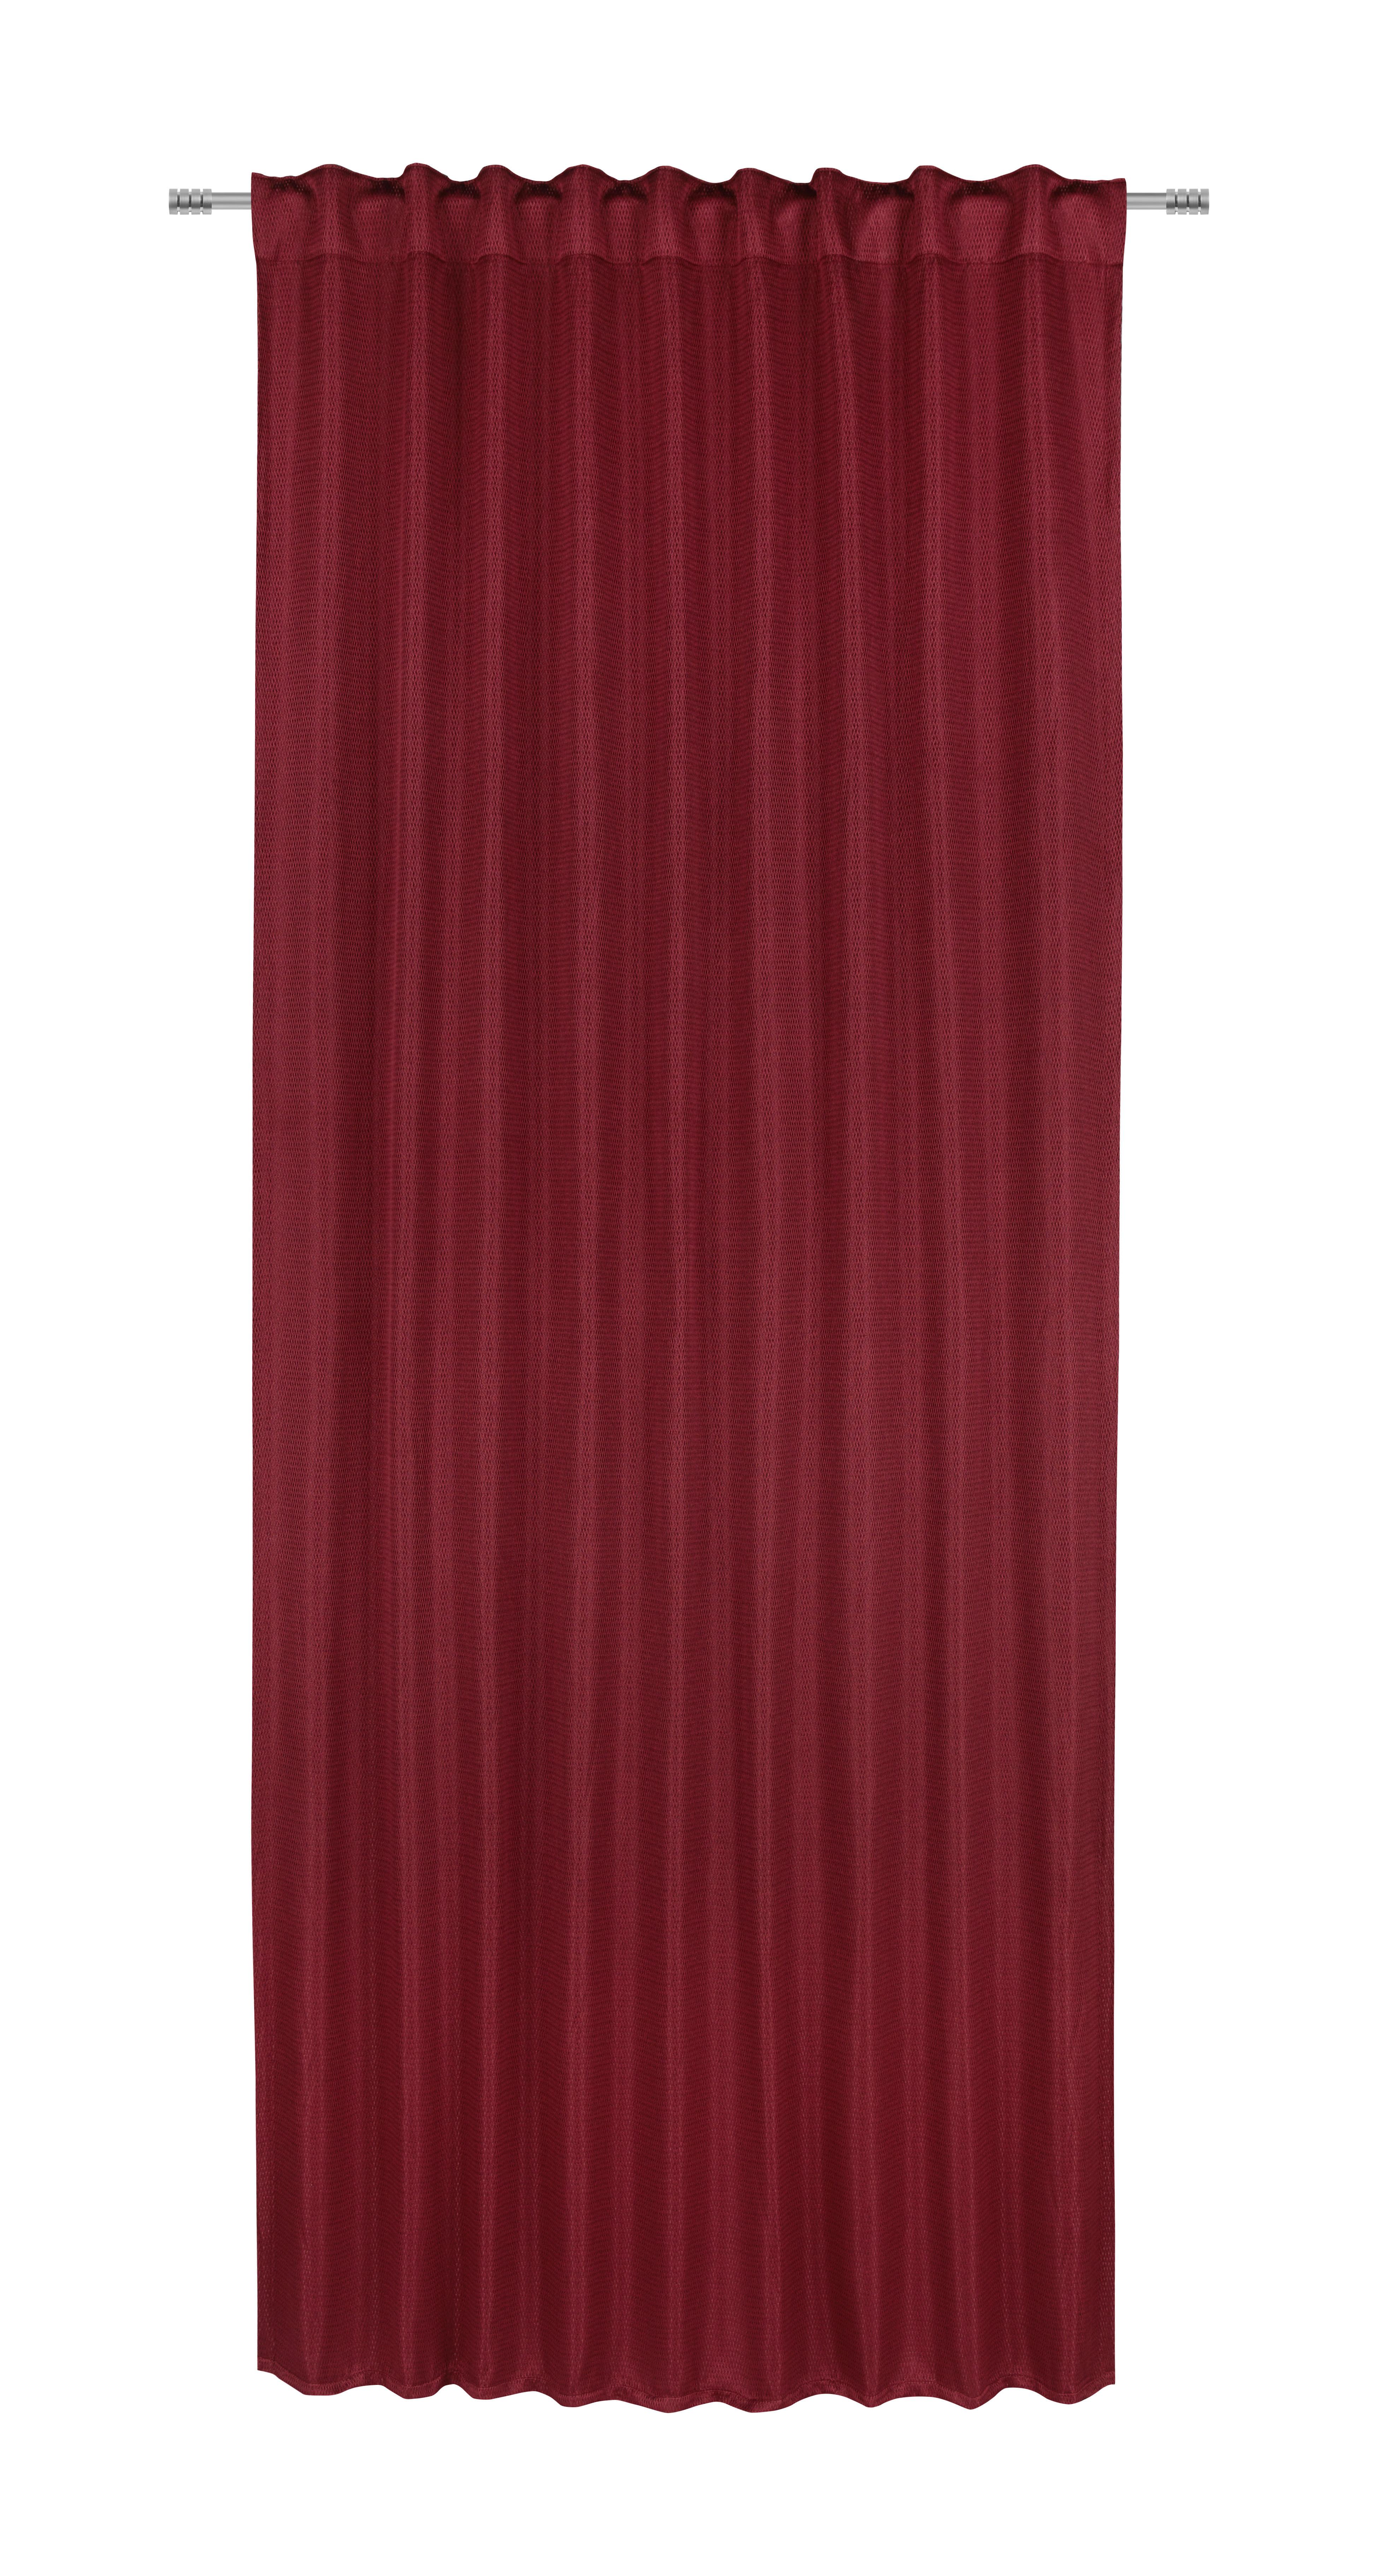 Zatemňovací Závěs Carlo, 140/245cm, Červená - červená, textil (140/245cm) - Premium Living